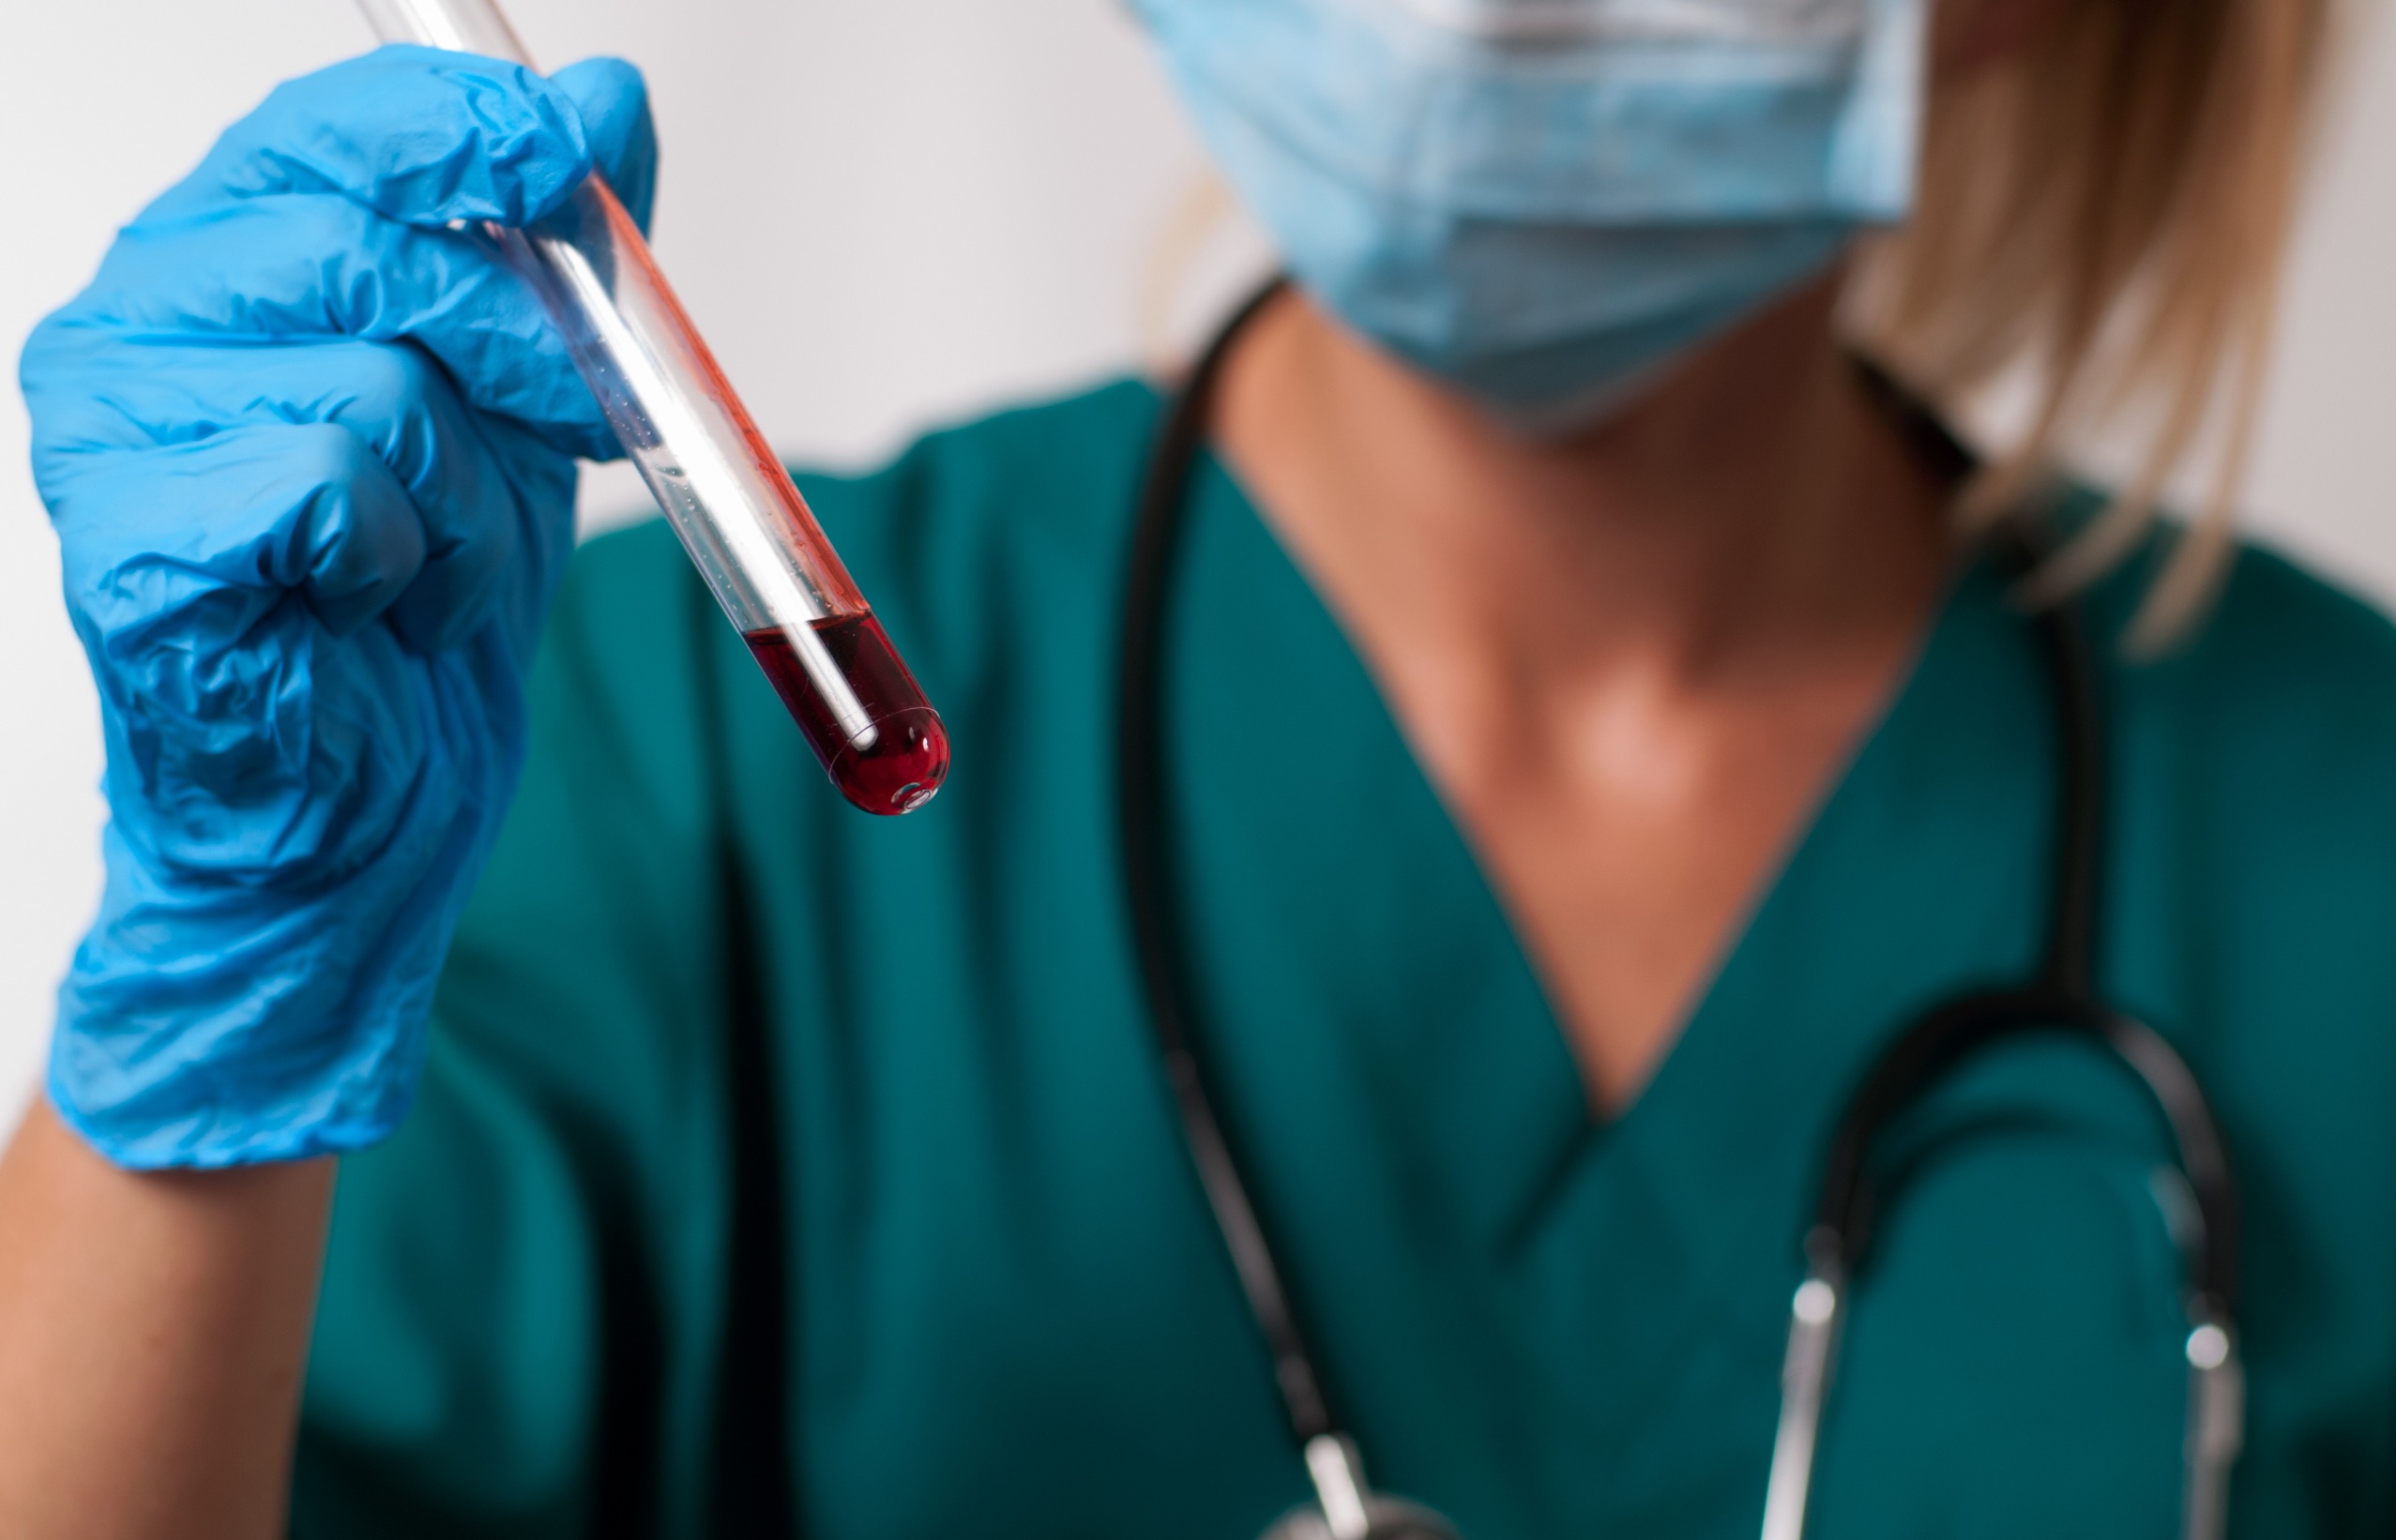 Młoda pielęgniarka w stroju medycznym trzyma w dłoniach fiolkę z krwią pacjenta. /Źródło: 123rf.com